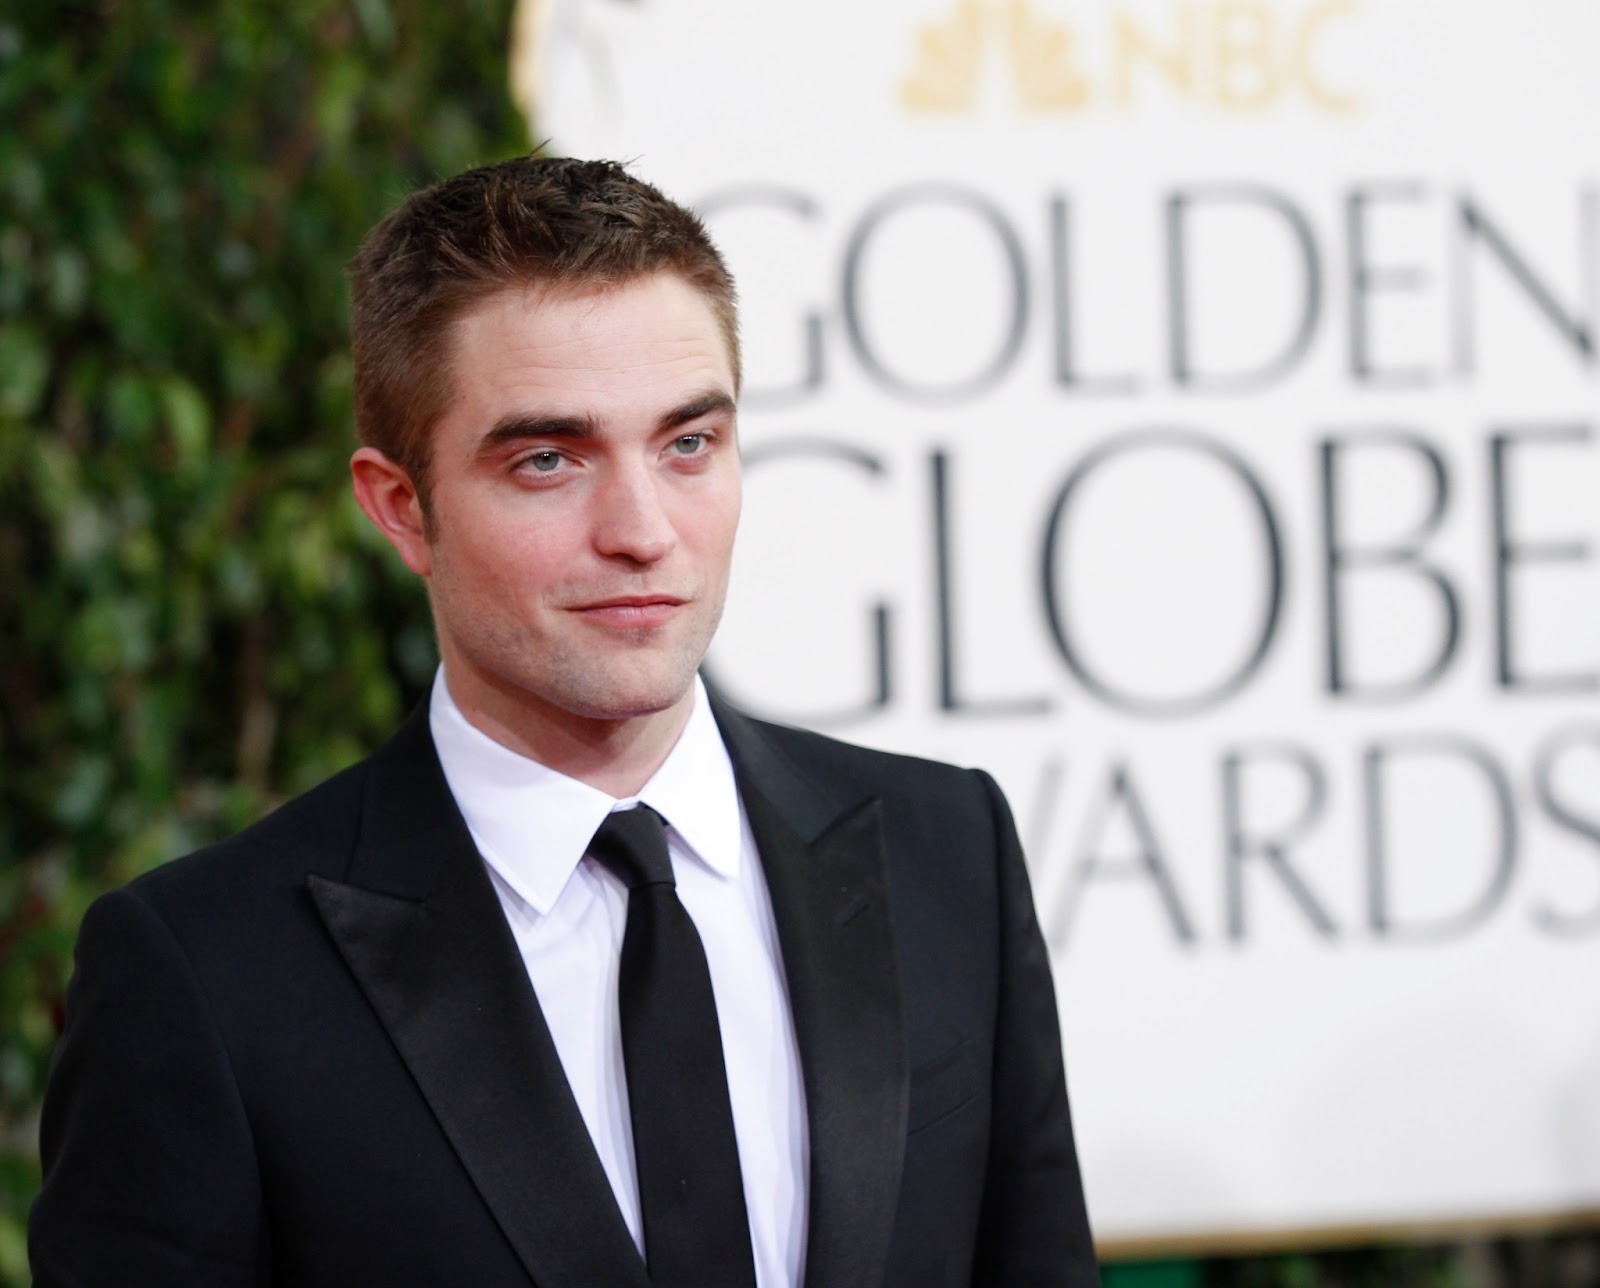 Robert Pattinson Golden Globes. Robert Pattinson Golden Globes 2018. Robert pictures